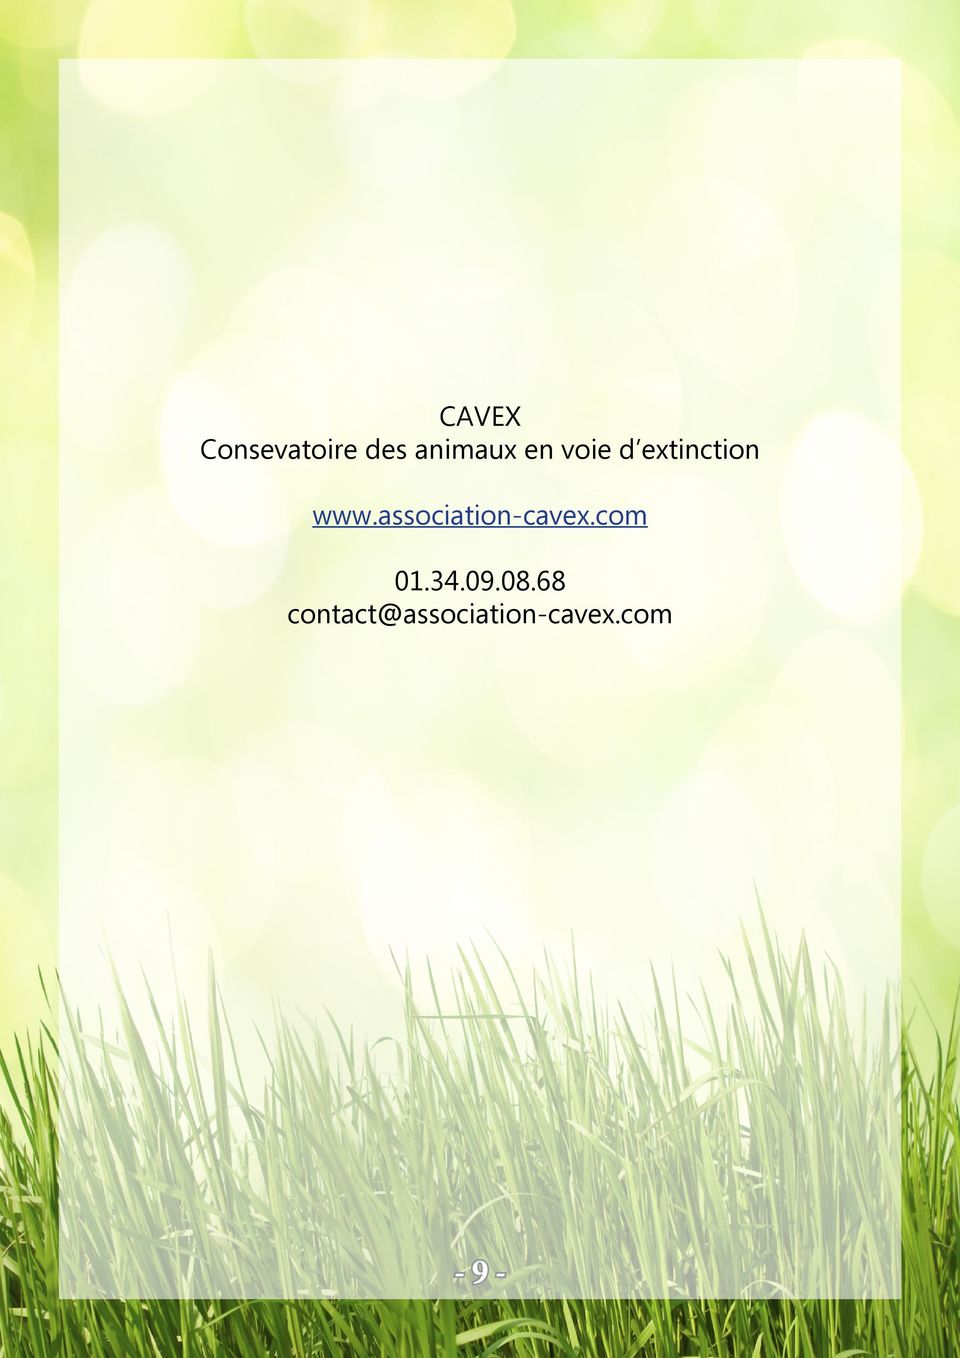 association-cavex.com 01.34.09.